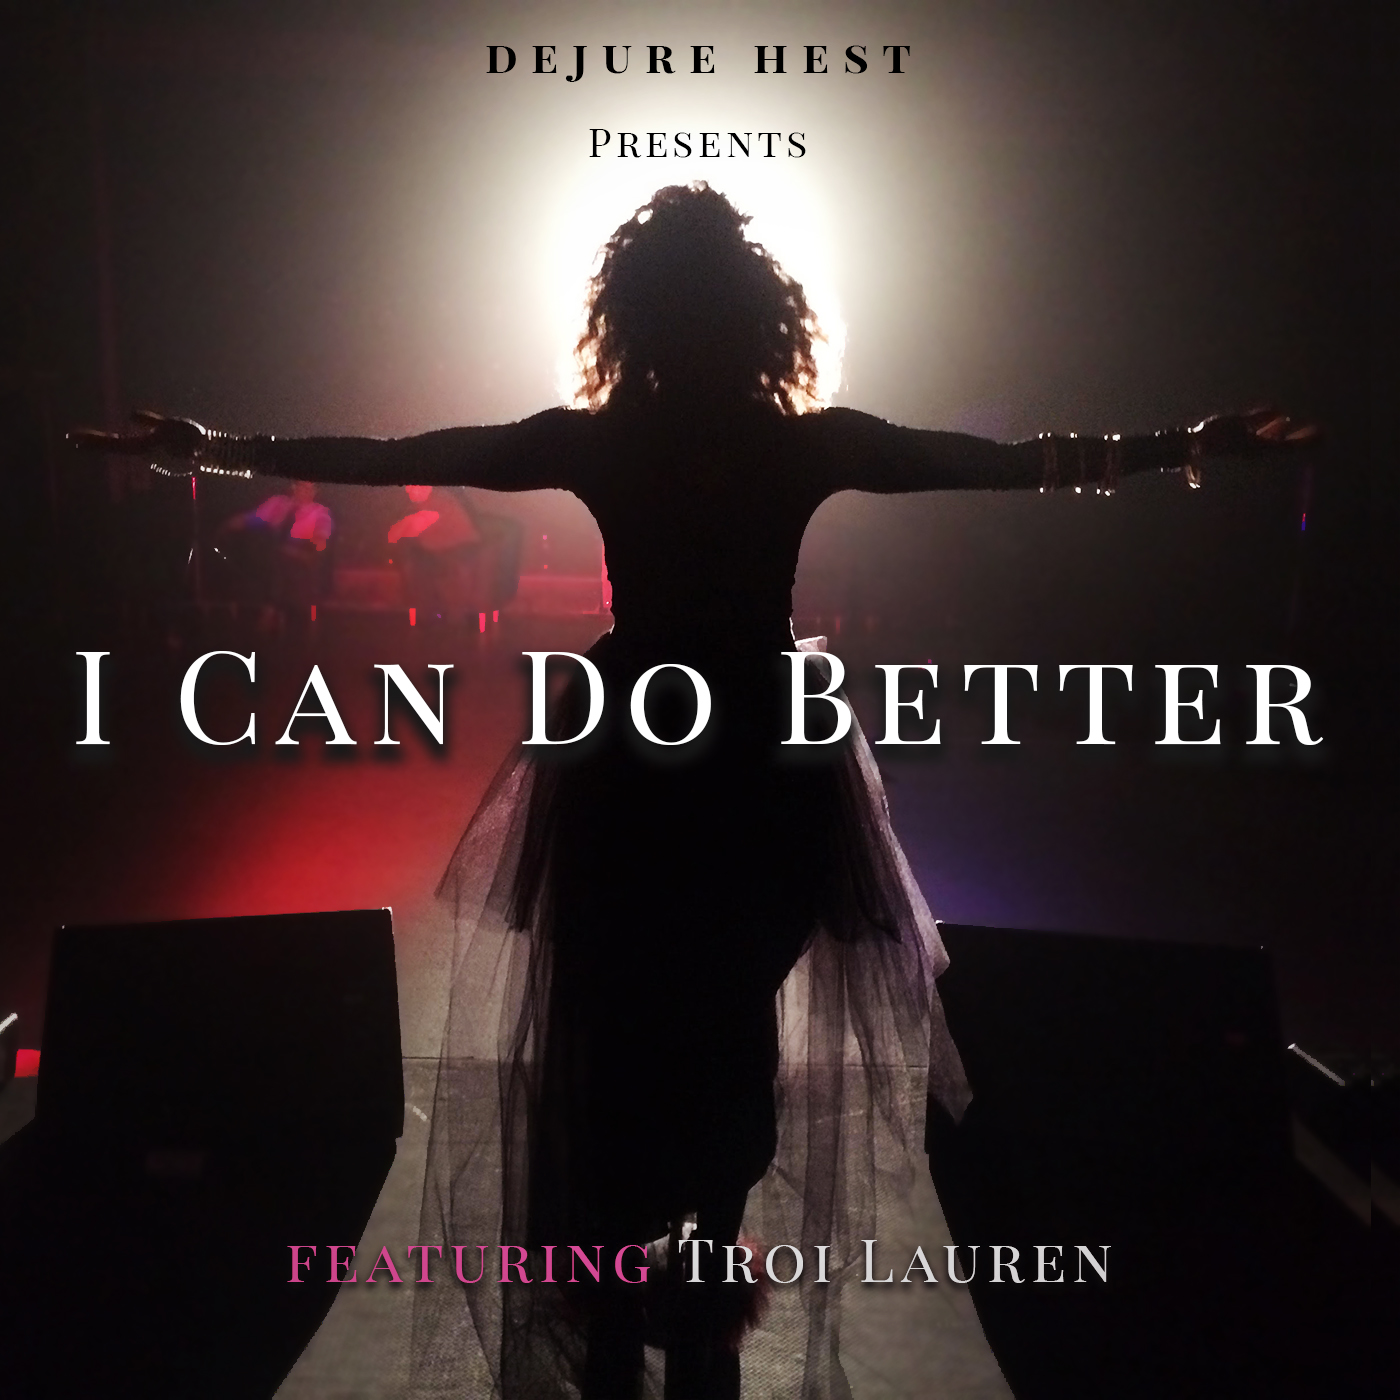 Dejure Hest “I Can Do Better” (ft. Troi Lauren)